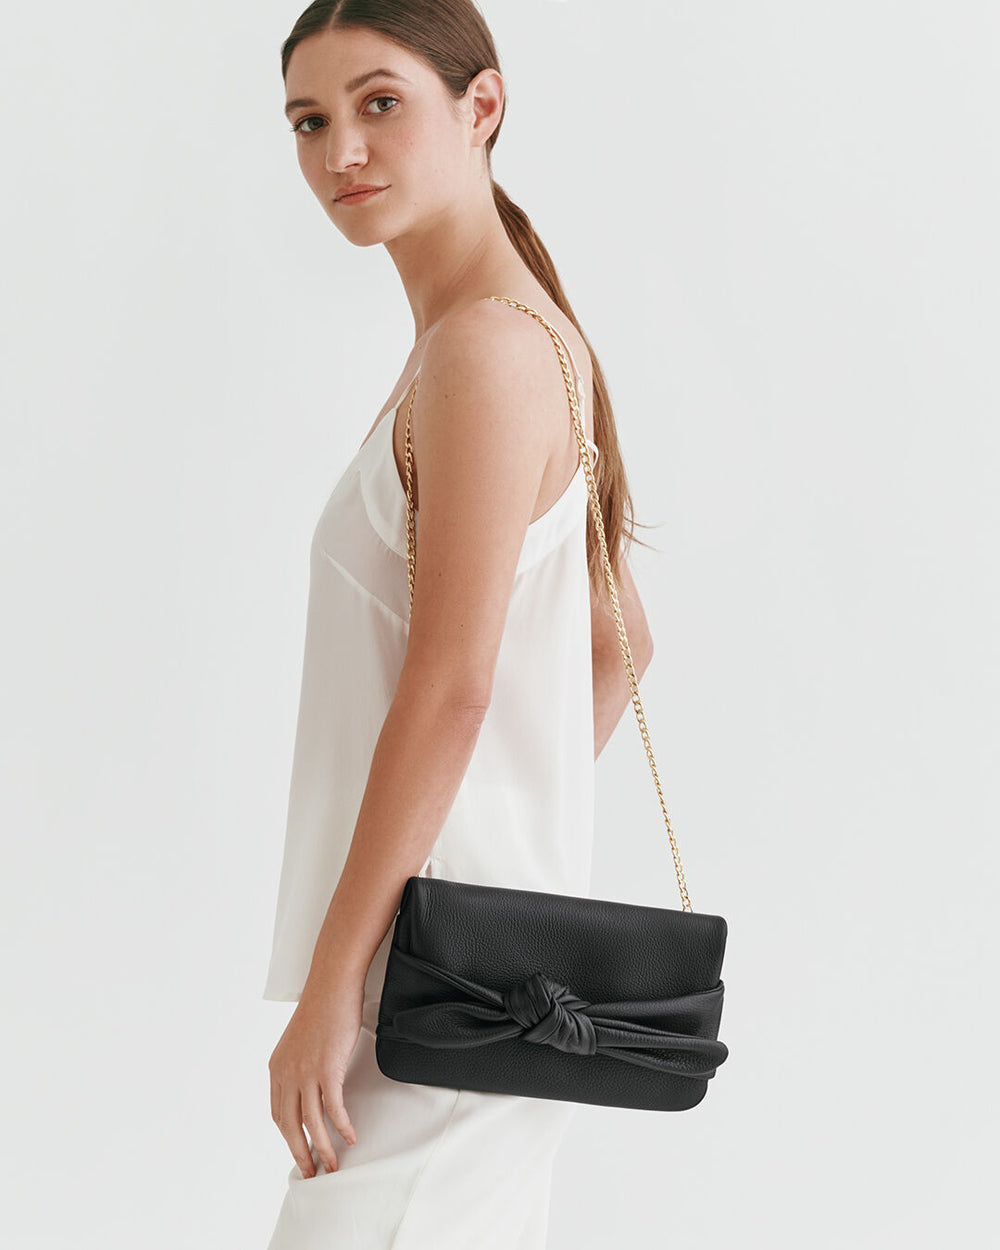 Black Clutch Purse for Women Bow Knot, Glitter Evening Handbag